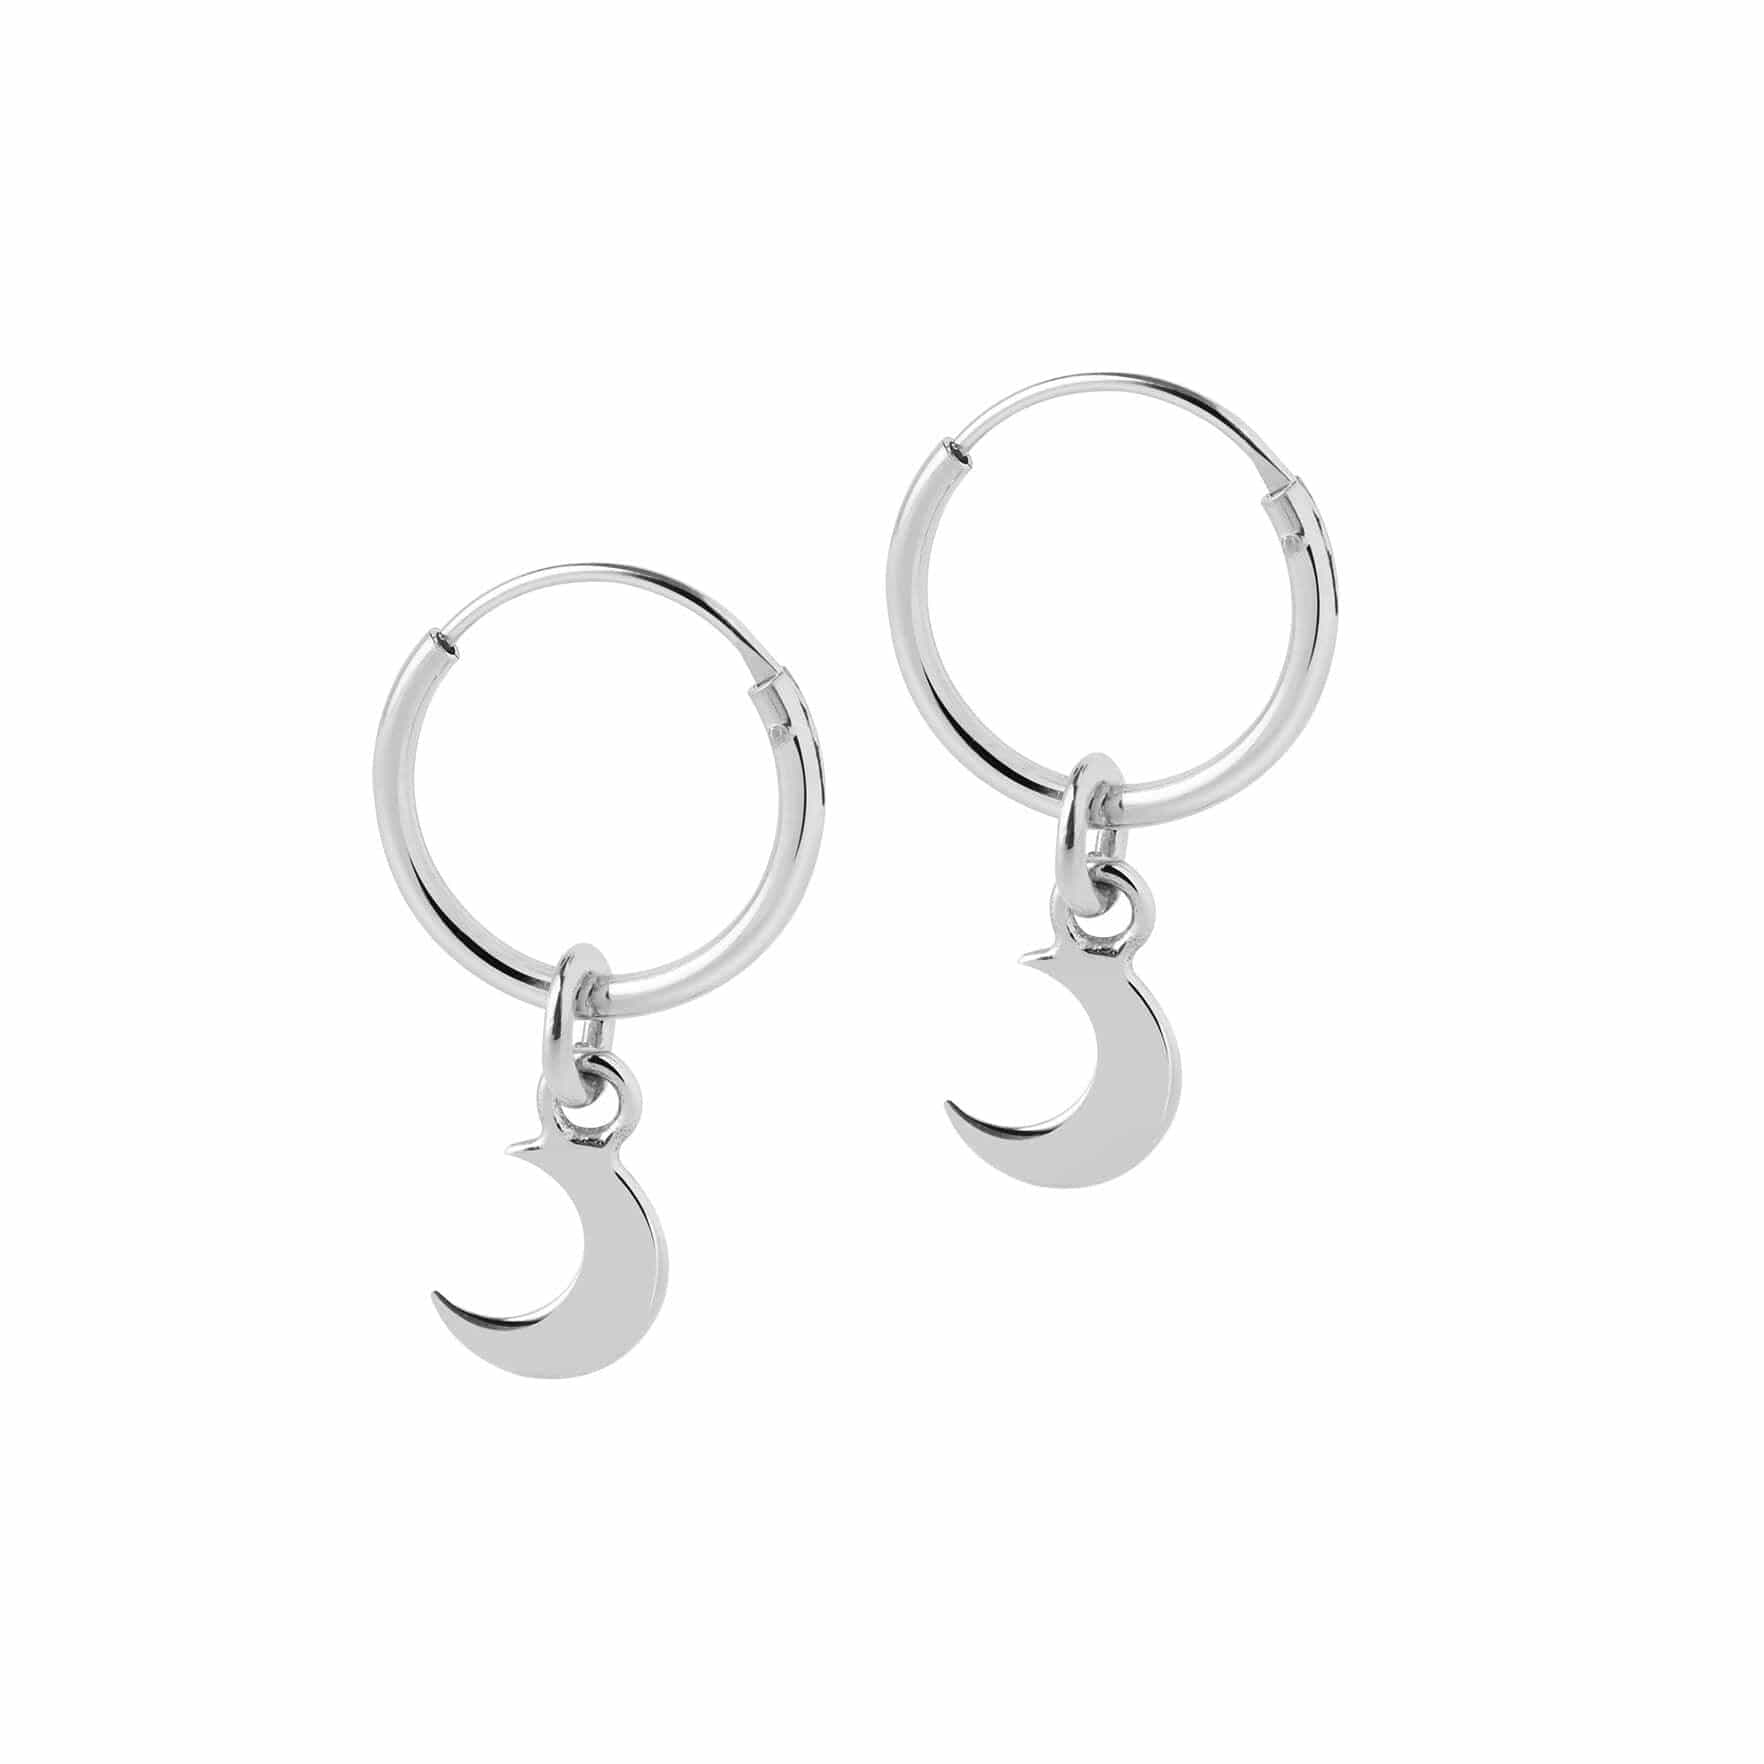 hoop earrings silver with moon pendant 12mm